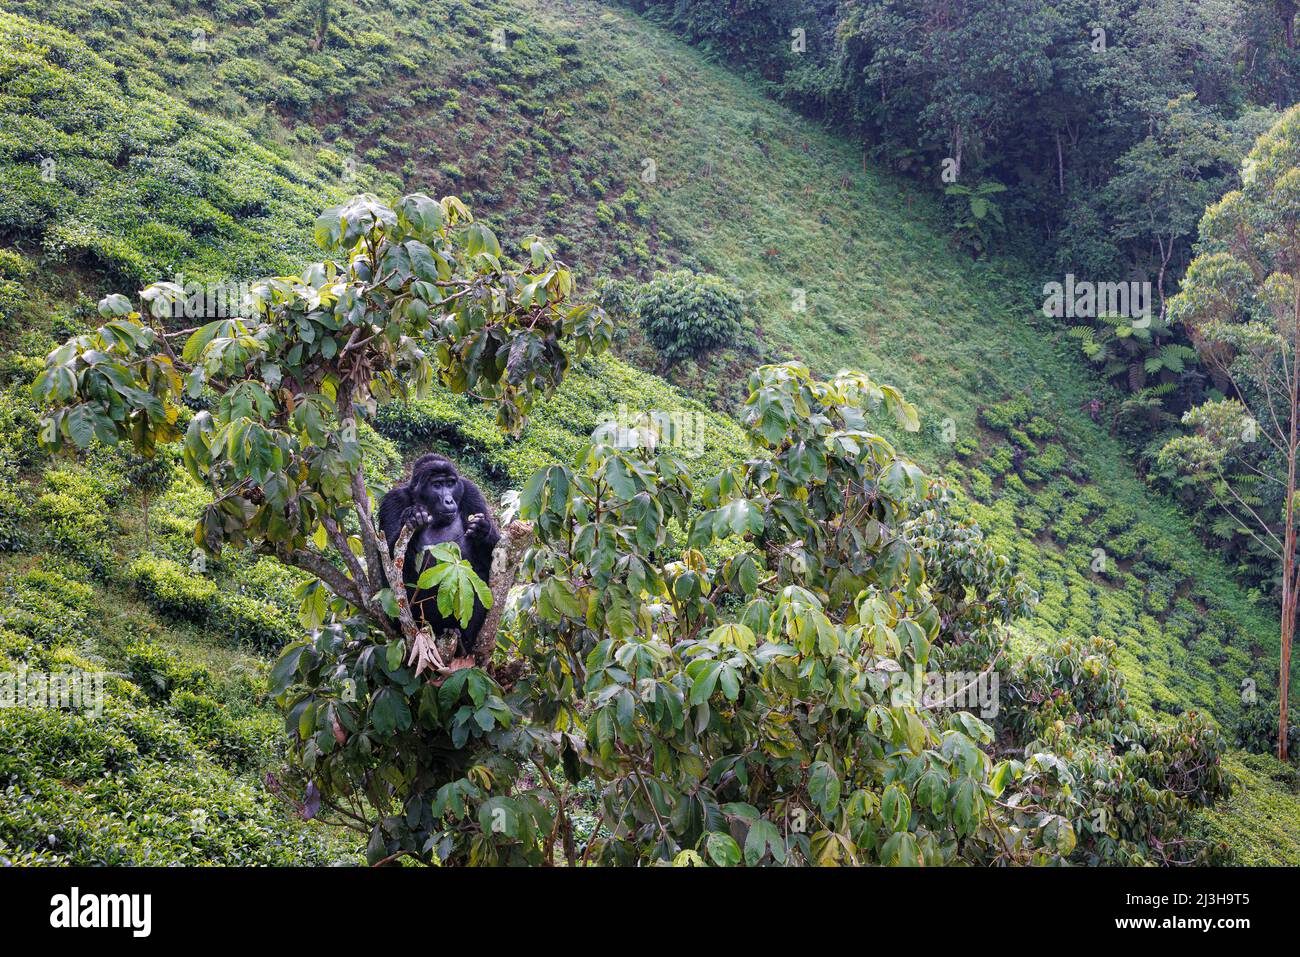 Uganda, Distrikt Kanungu, Ruhija, Bwindi Impenetrable National Park, der von der UNESCO zum Weltkulturerbe erklärt wurde, Berggorilla in einer Teeplantage Stockfoto